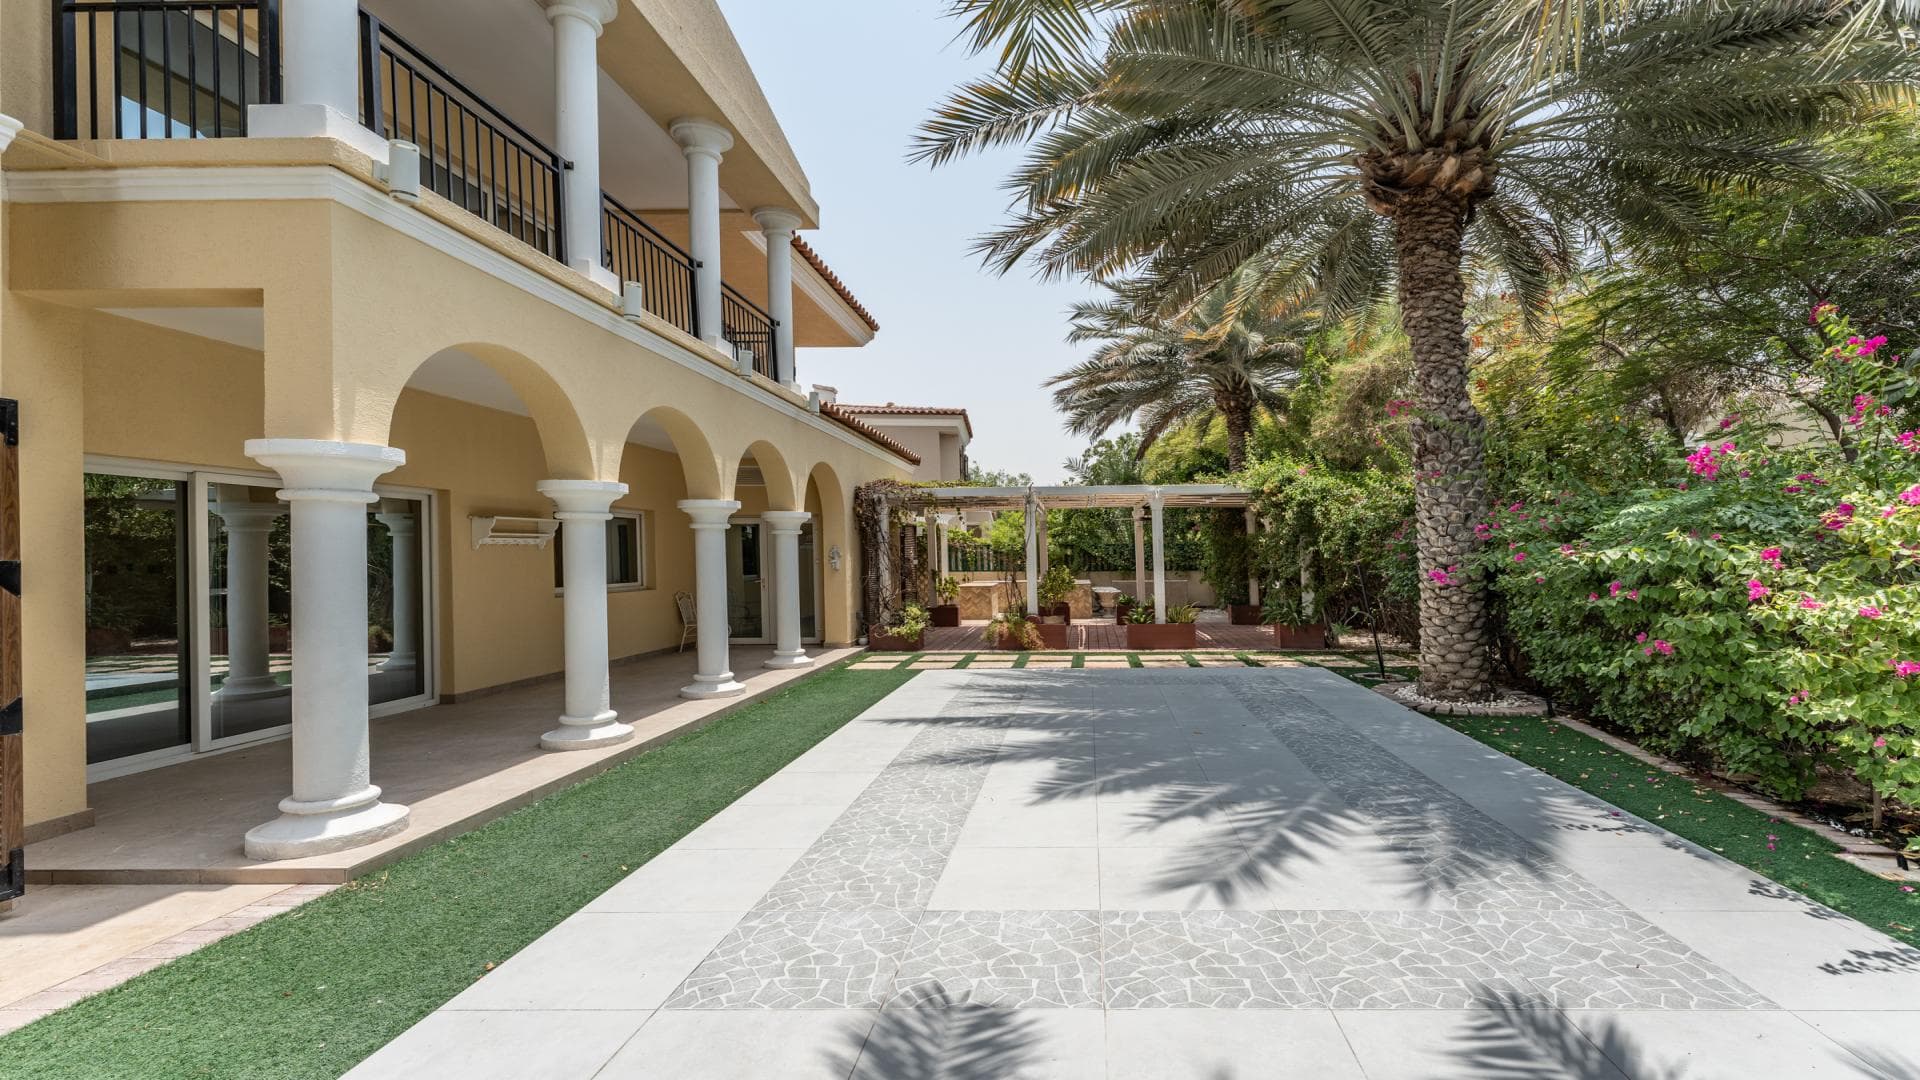 5 Bedroom Villa For Rent Al Thamam 36 Lp36037 26ca686837e2a400.jpg